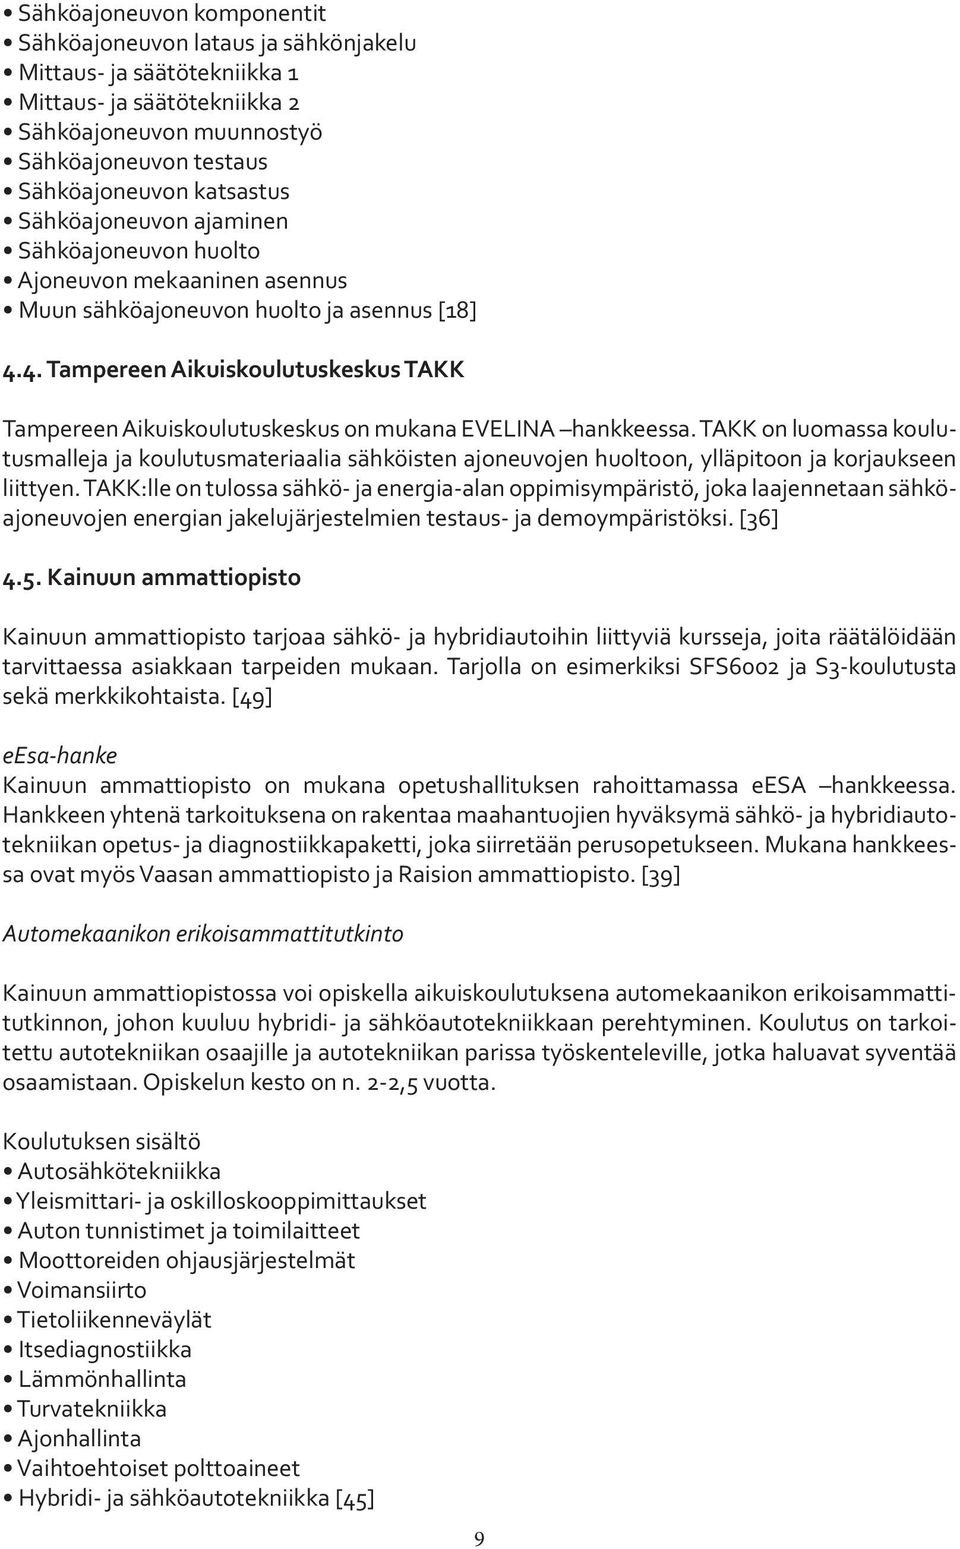 4. Tampereen Aikuiskoulutuskeskus TAKK Tampereen Aikuiskoulutuskeskus on mukana EVELINA hankkeessa.